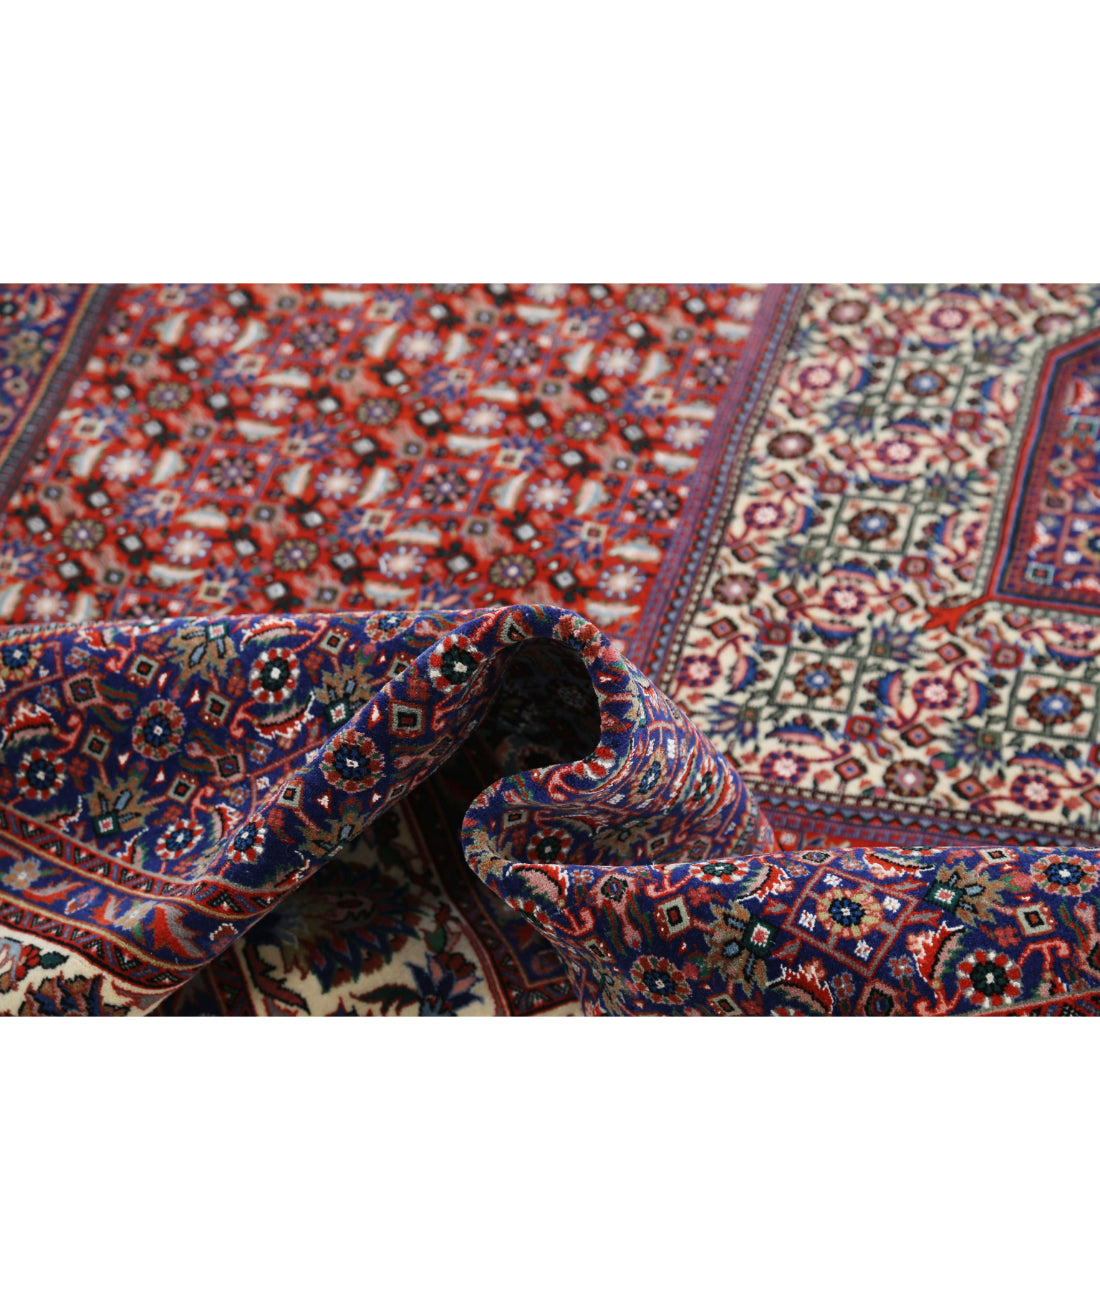 Hand Knotted Persian Bijar Wool & Silk Rug - 6'6'' x 9'9'' 6'6'' x 9'9'' (195 X 293) / Red / Ivory